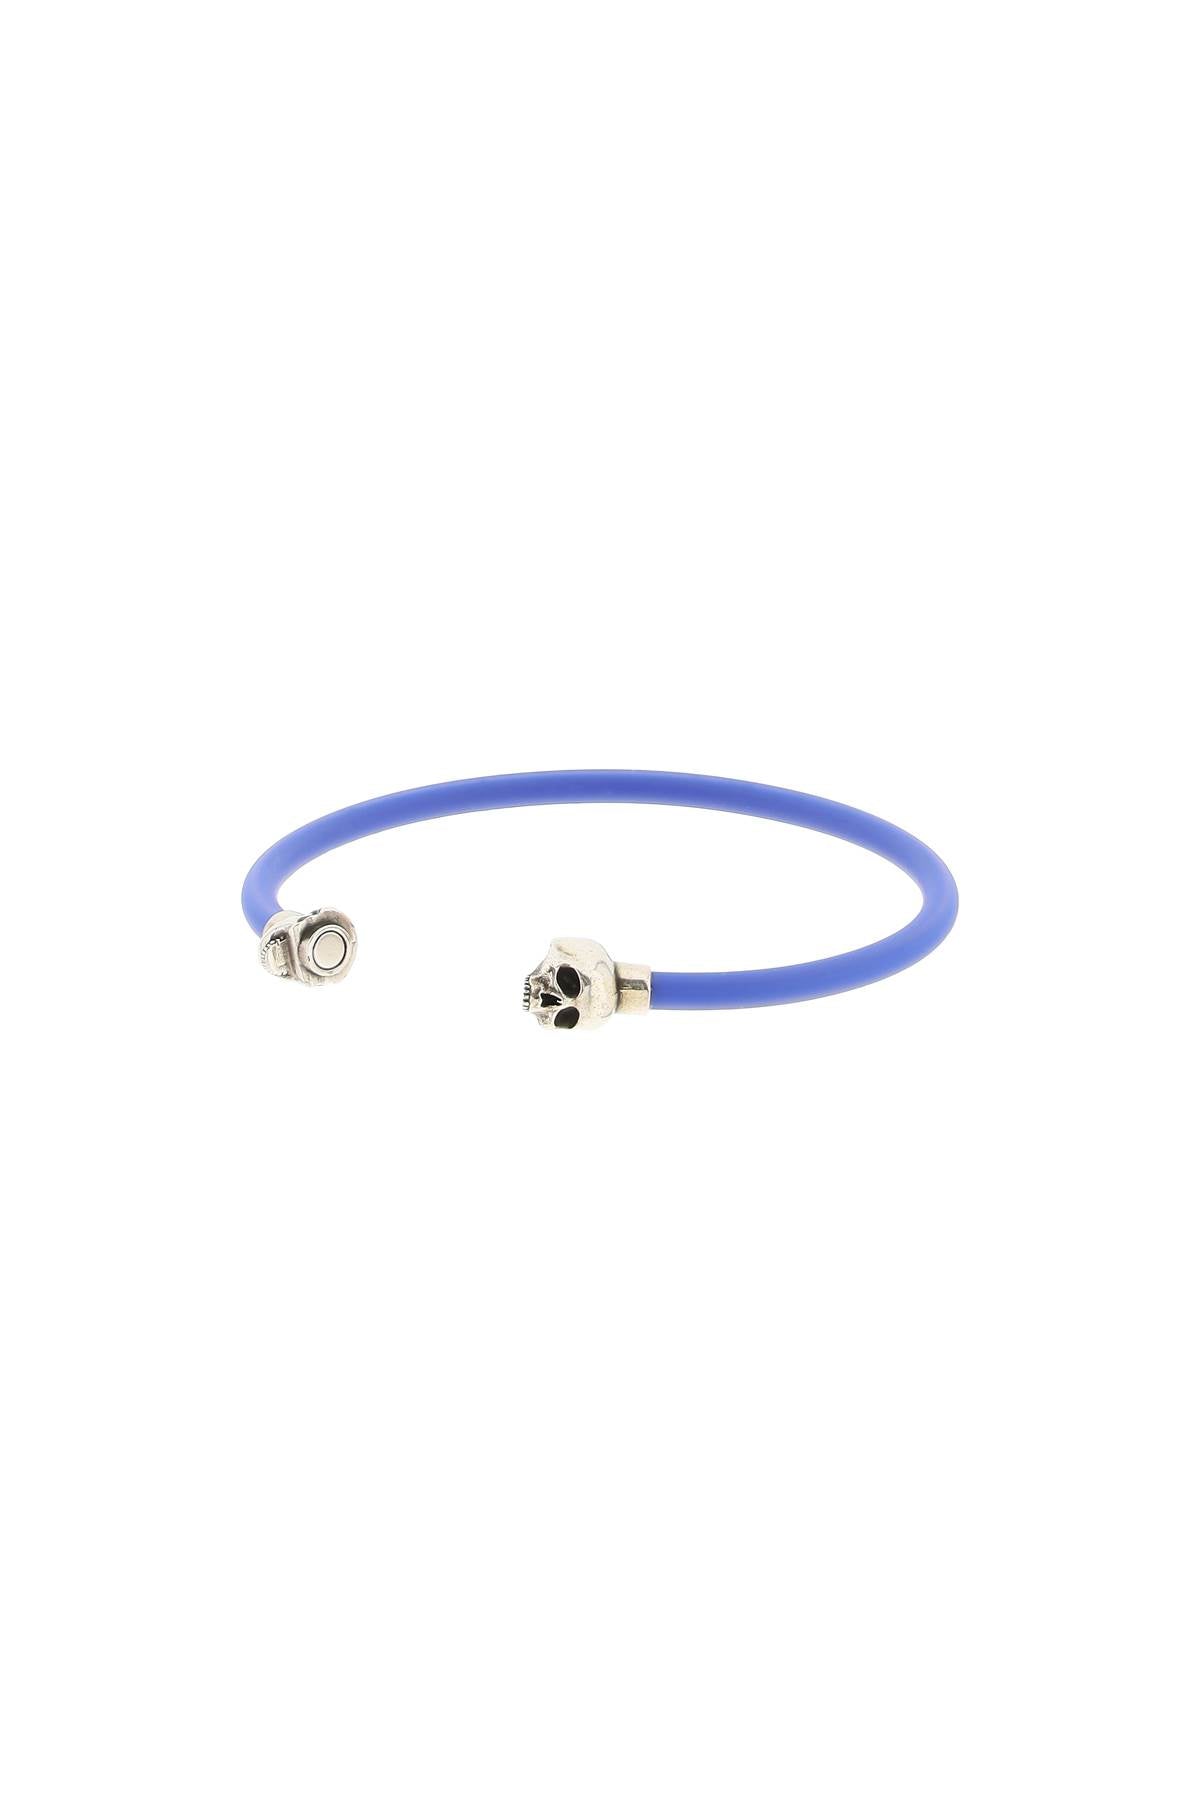 Alexander Mcqueen Skull Bracelet With Pearls   Blu